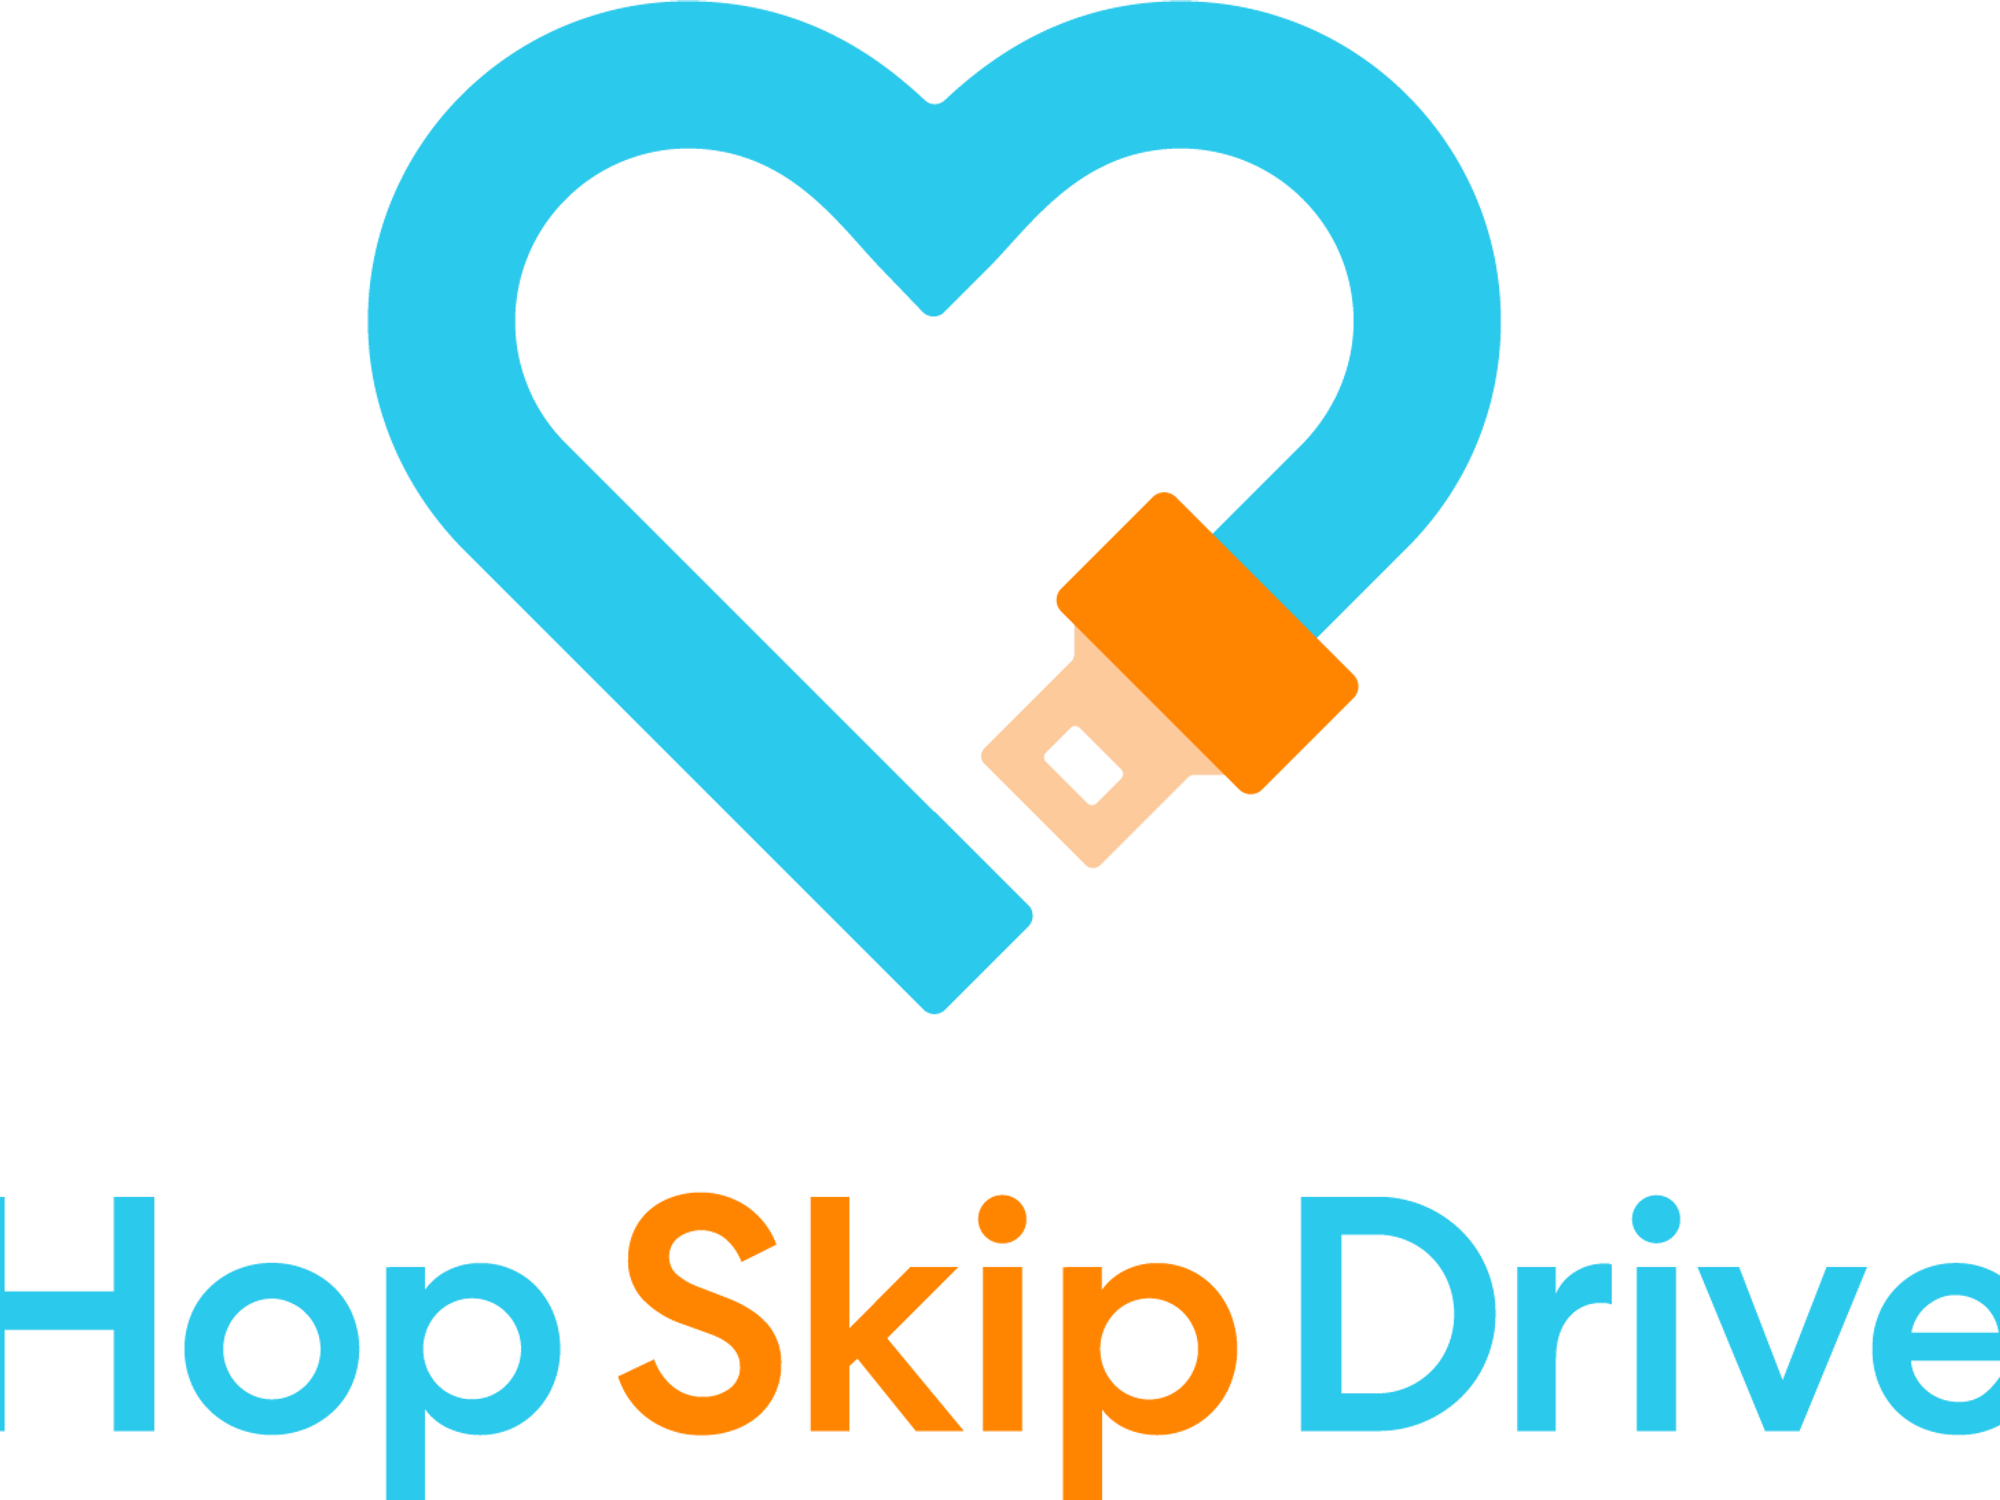 HopSkipDrive Will Layoff Over 100 Employees - dot.LA